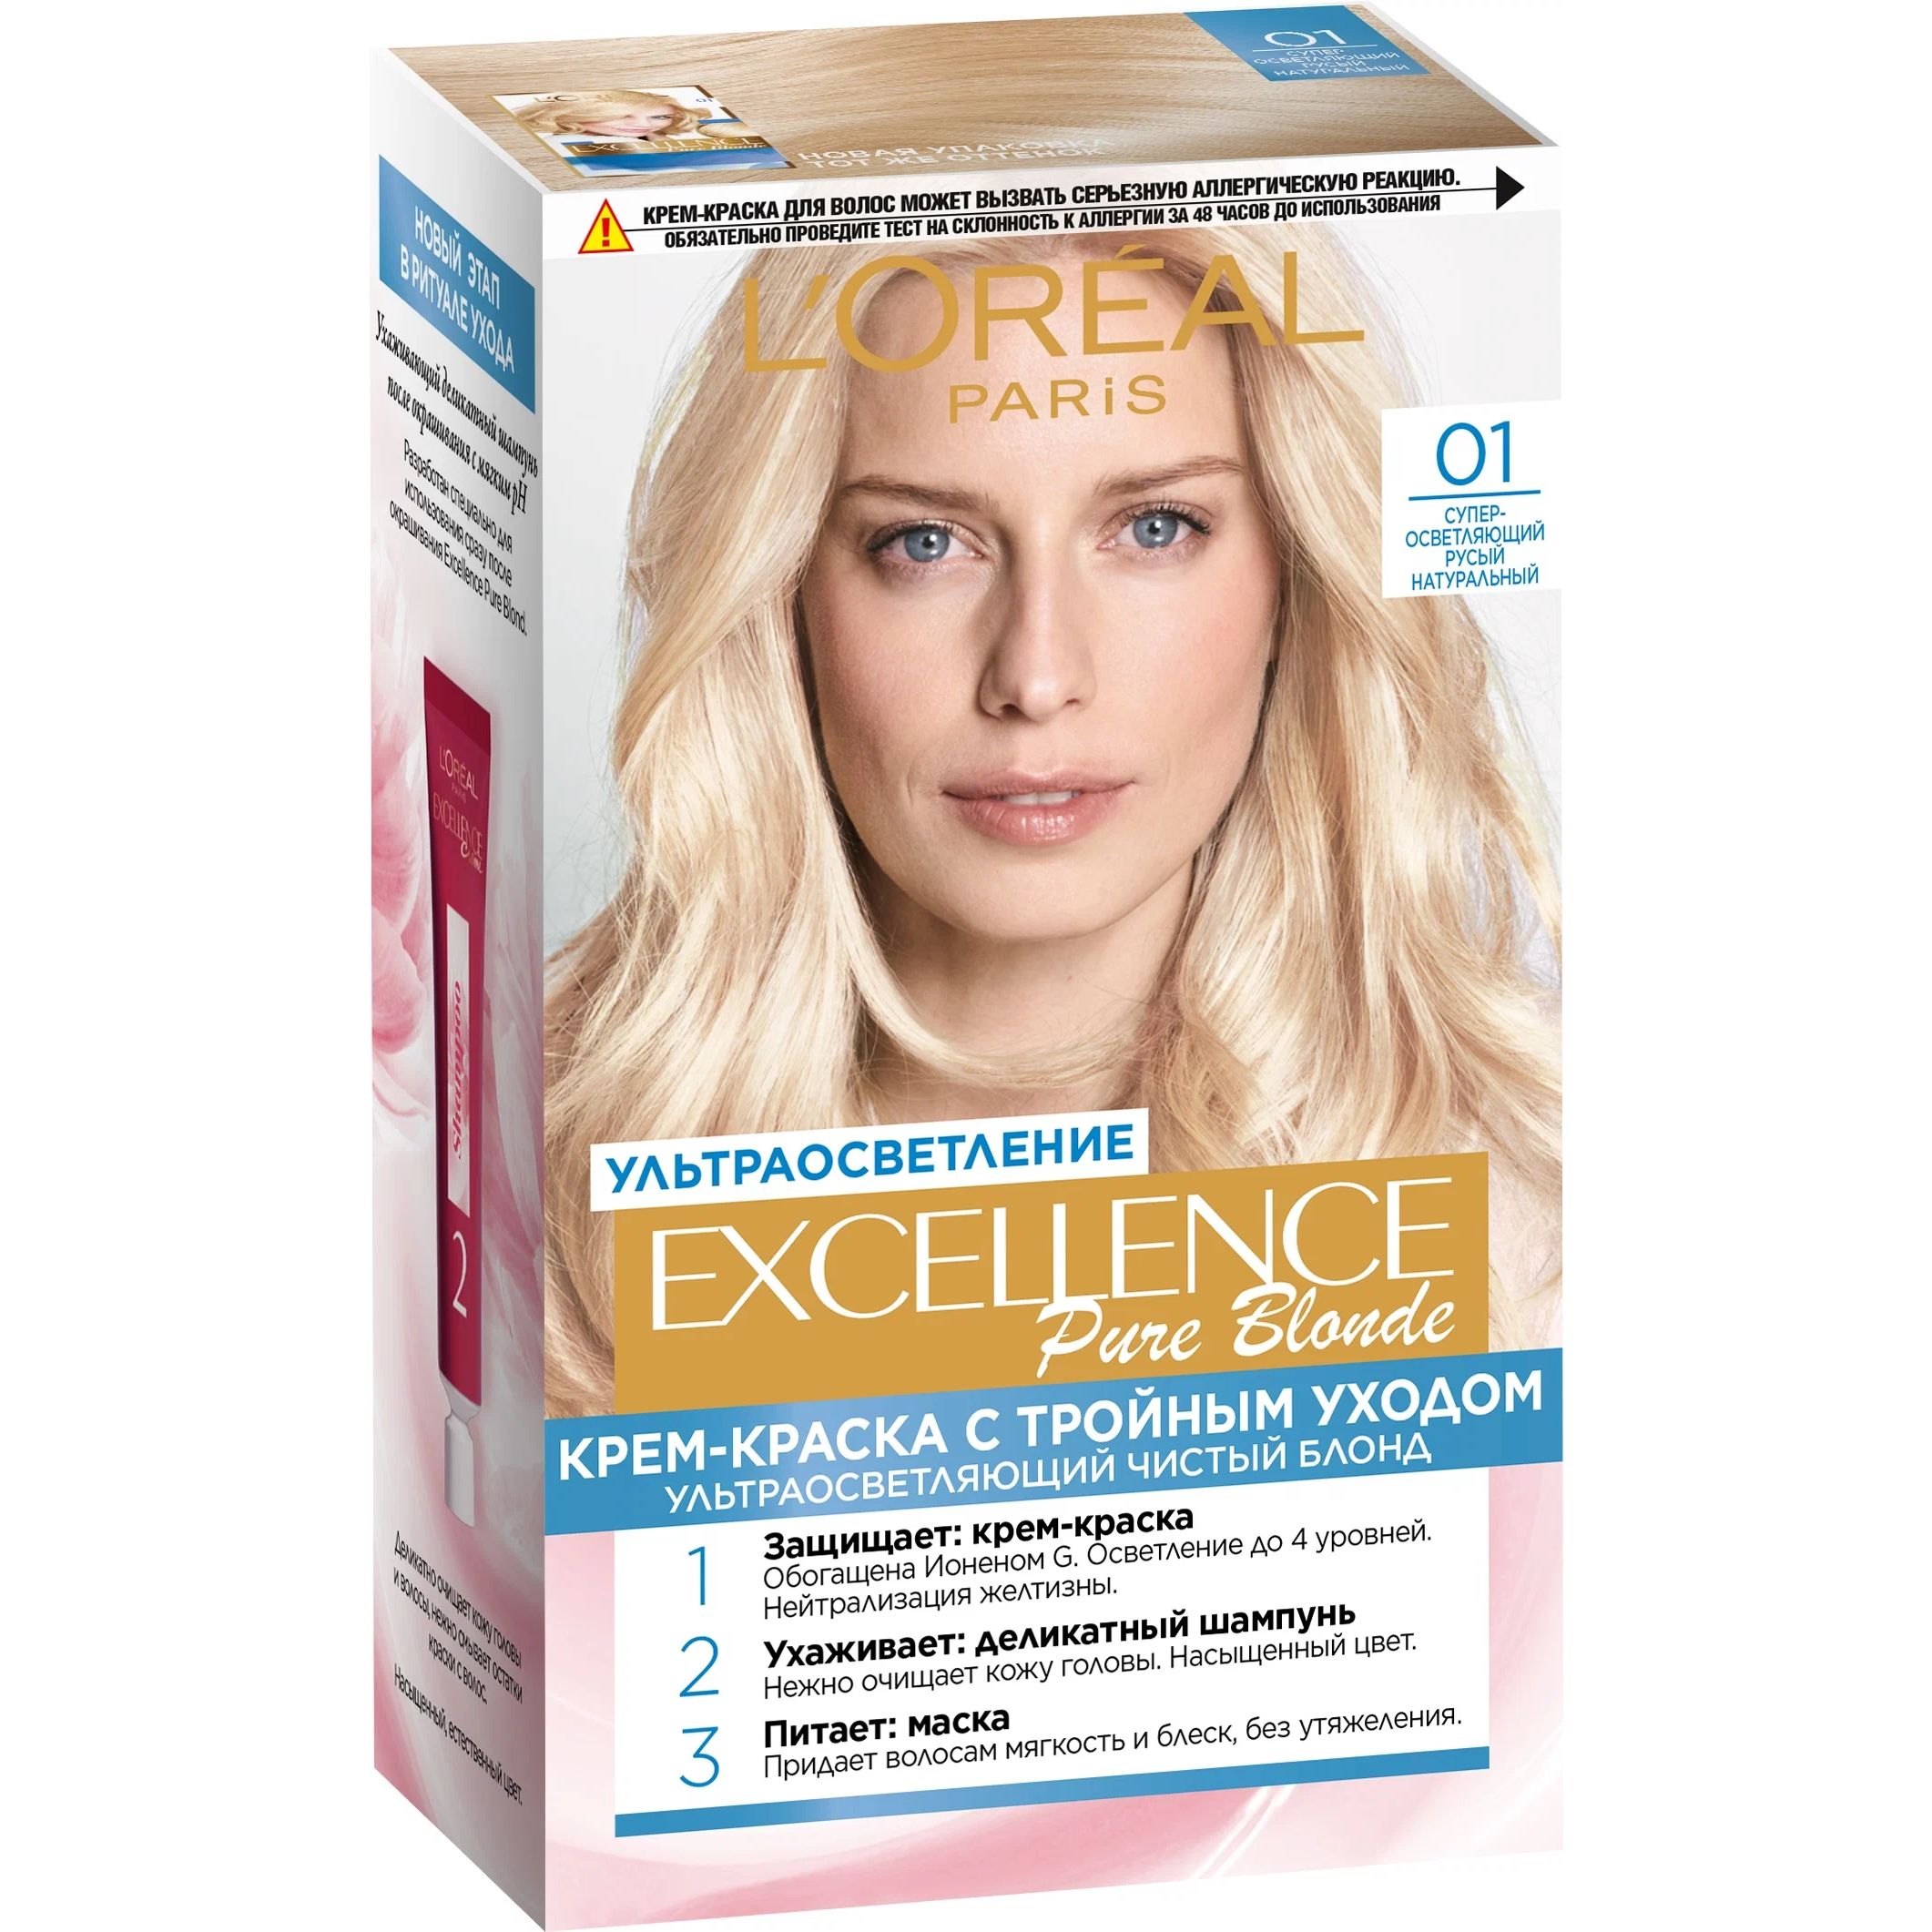 Крем-краска для волос L'Oreal Paris Excellence, 01 осветляющий русый, натуральный, 176 мл the excellence dividend